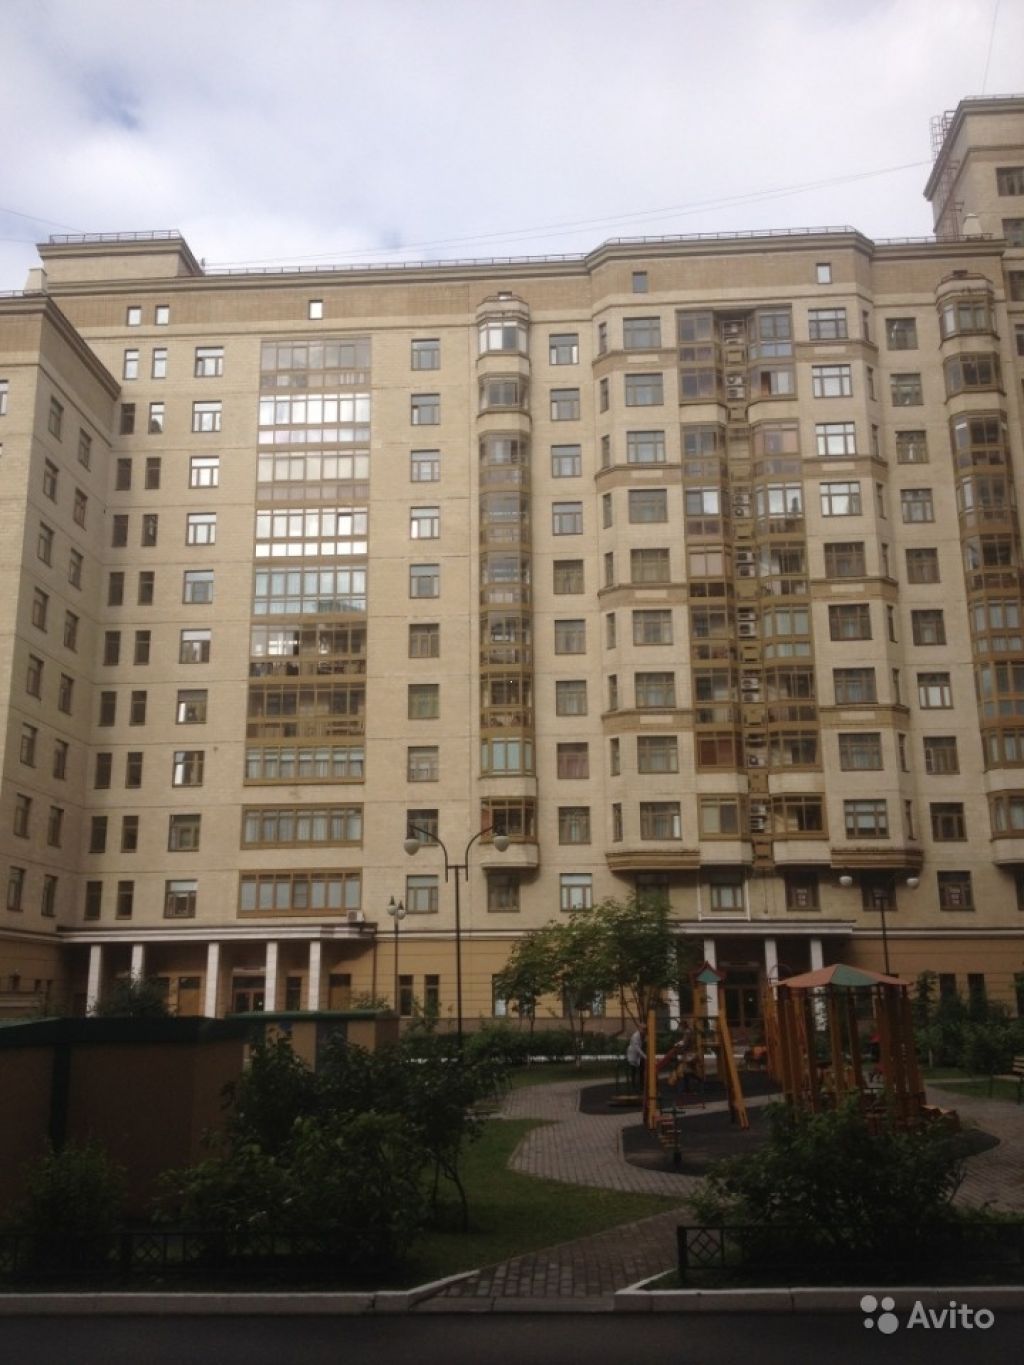 Продам квартиру 3-к квартира 89.7 м² на 12 этаже 15-этажного монолитного дома в Москве. Фото 1